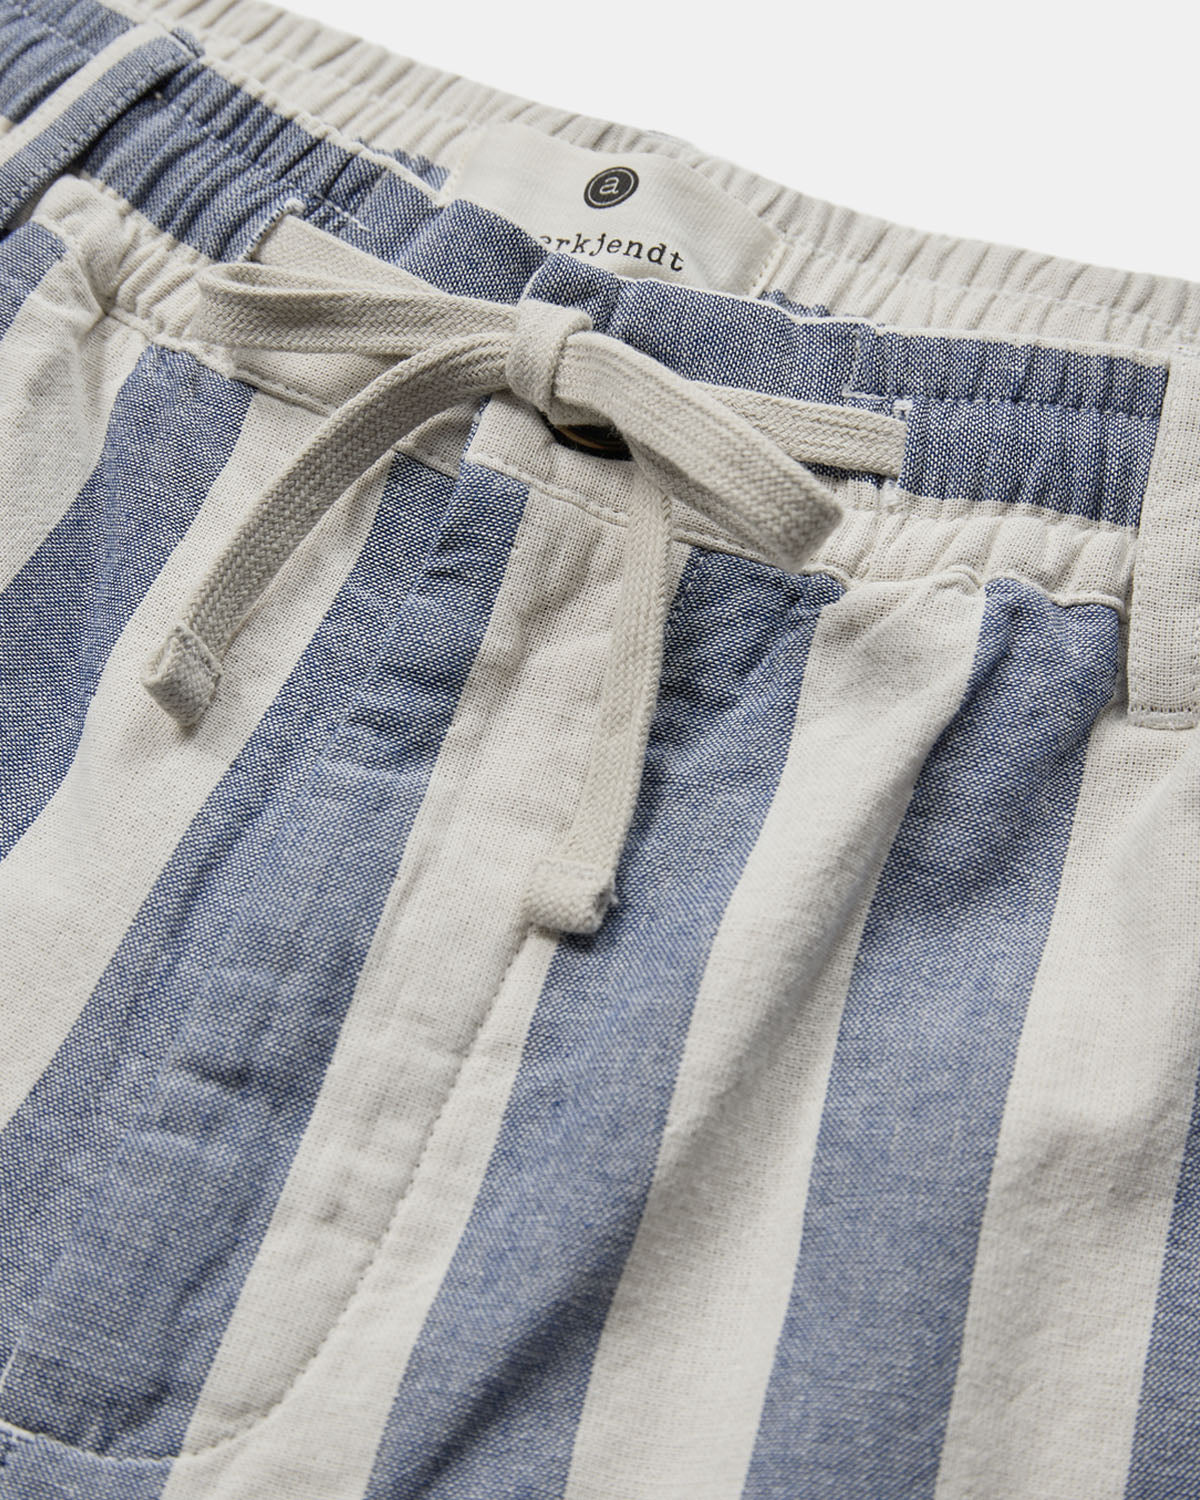 Jan stripe shorts bright cobalt - Anerkjendt